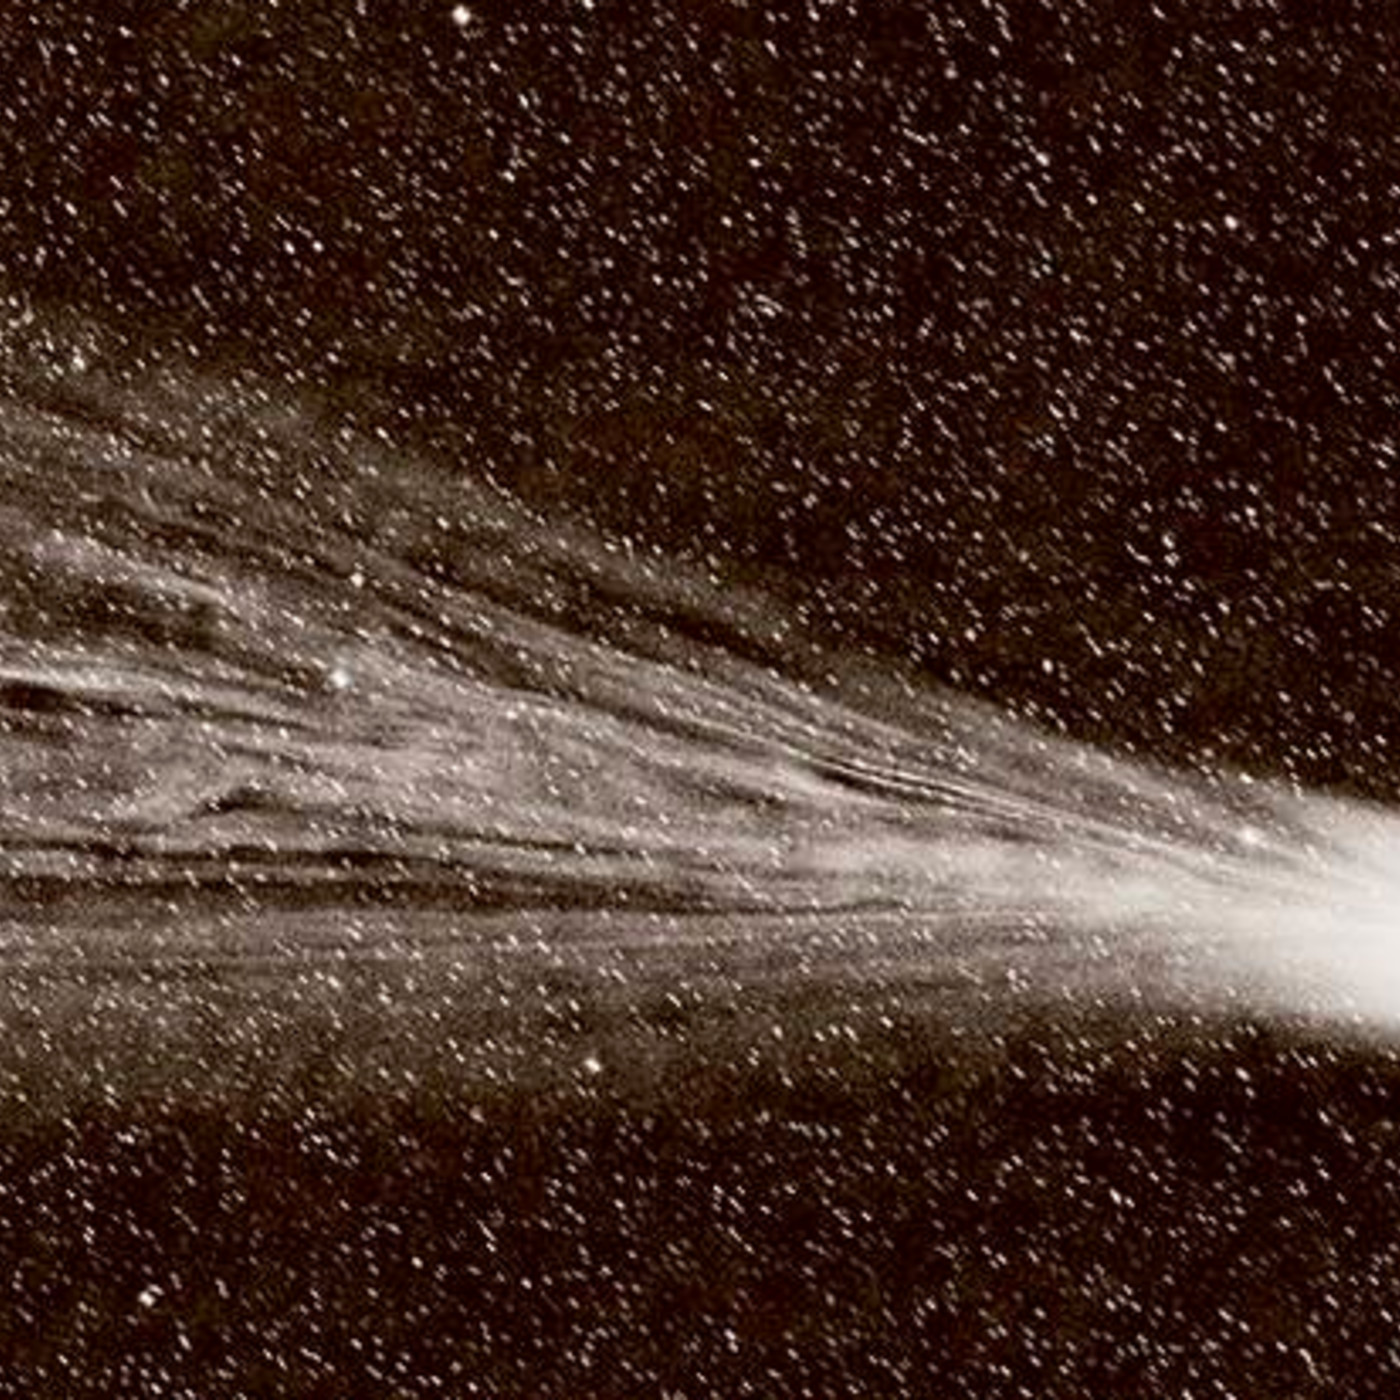 Проект комета галлея